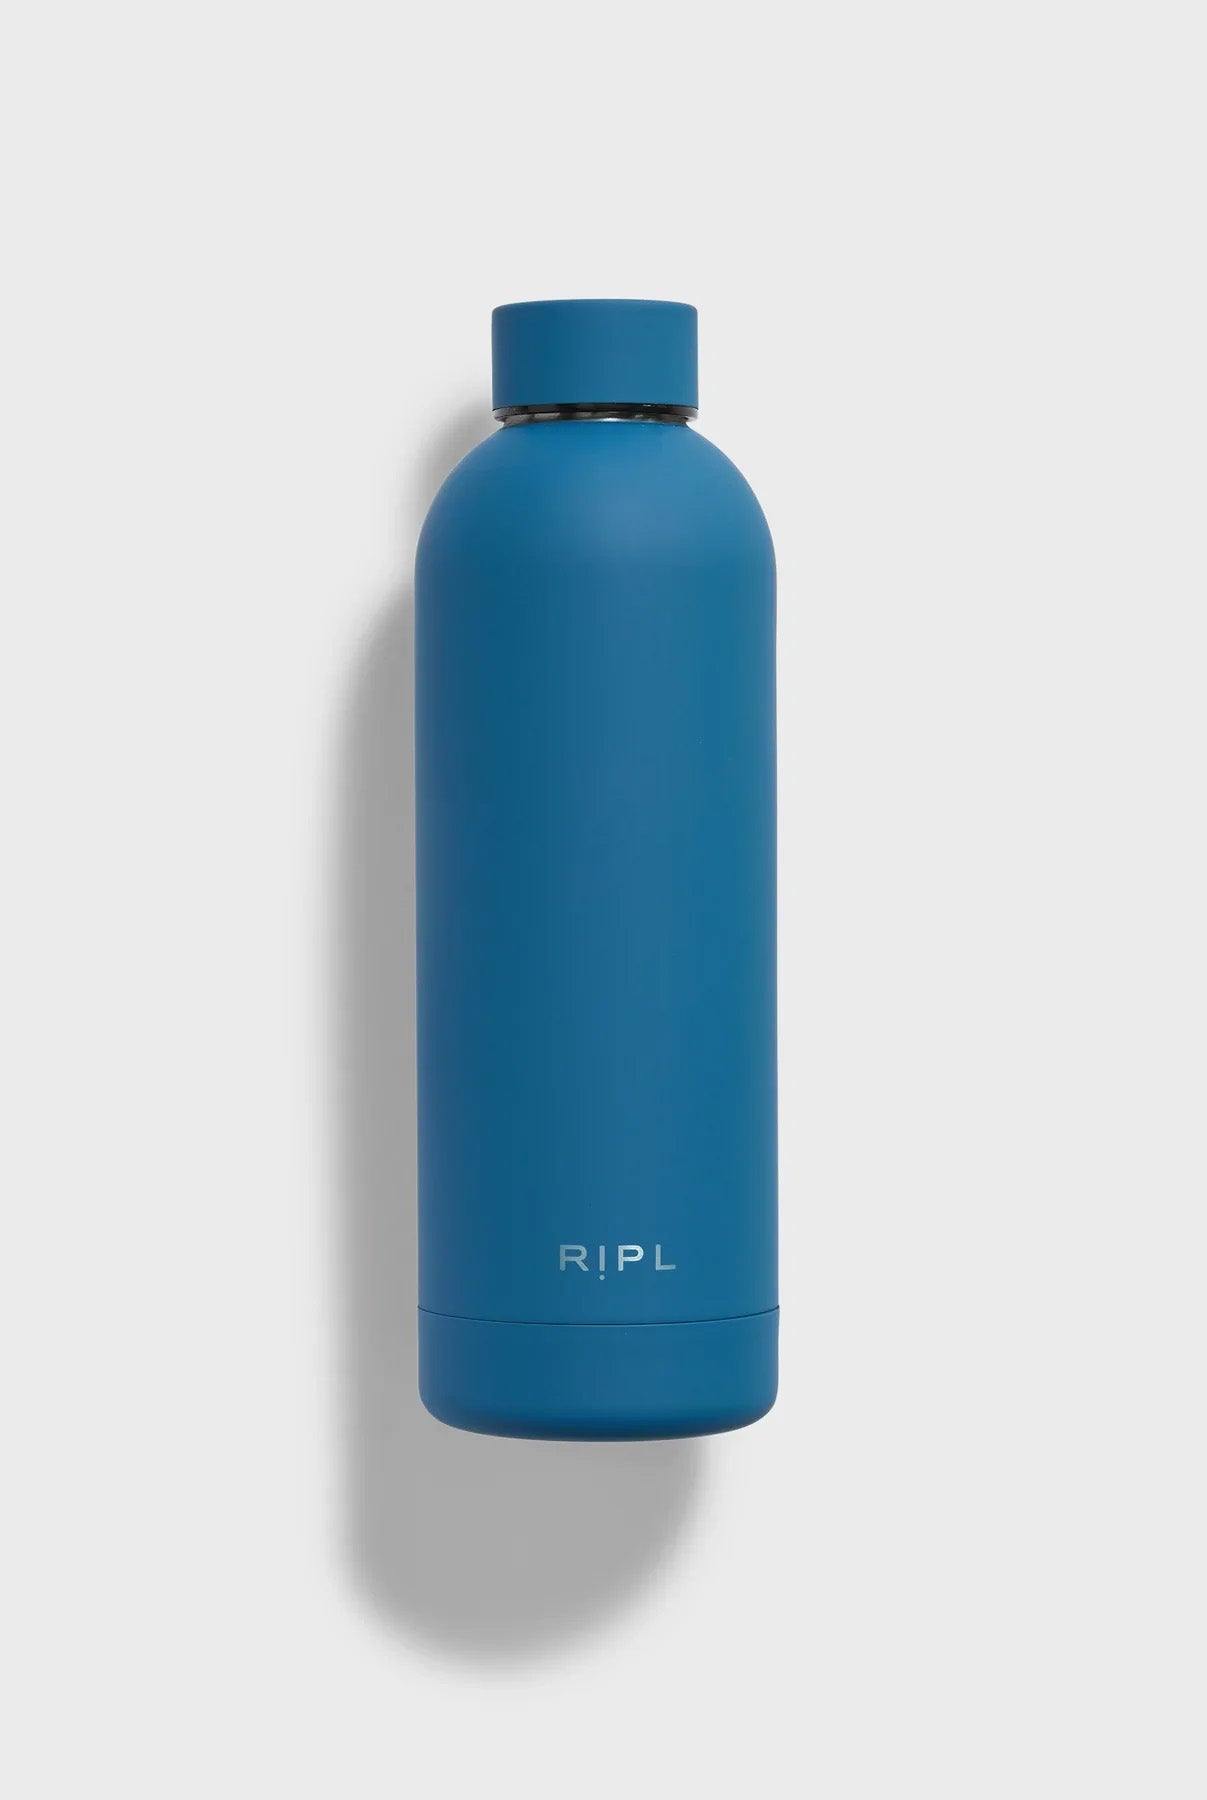 Ocean Blue Custom Ripl Water Bottle